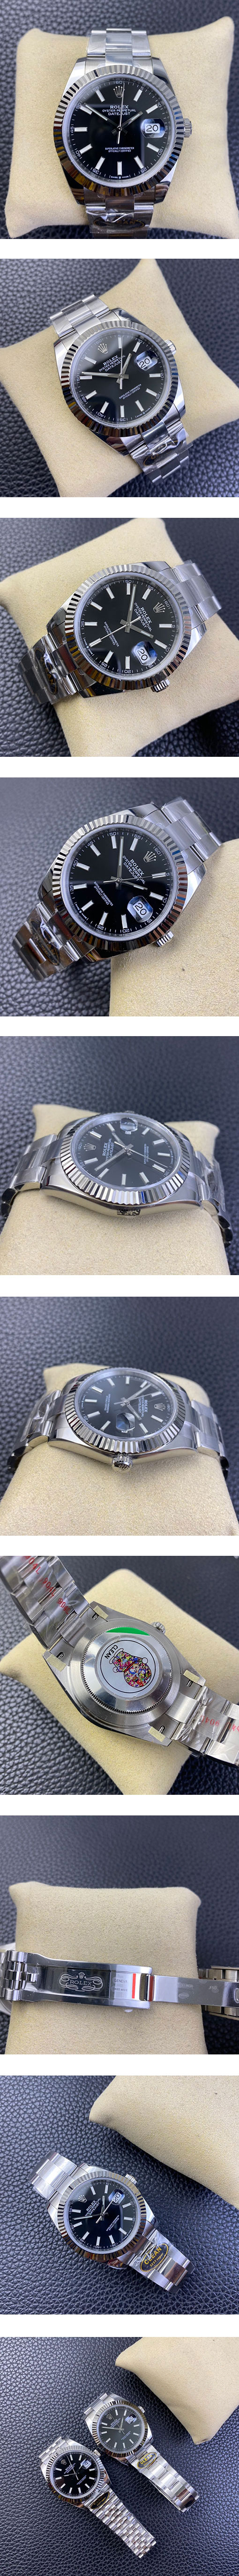 ロレックスM126334-0017 デイトジャスト 41mm、ブラック オイスターブレス CLEAN最高級スーパーコピー時計通販